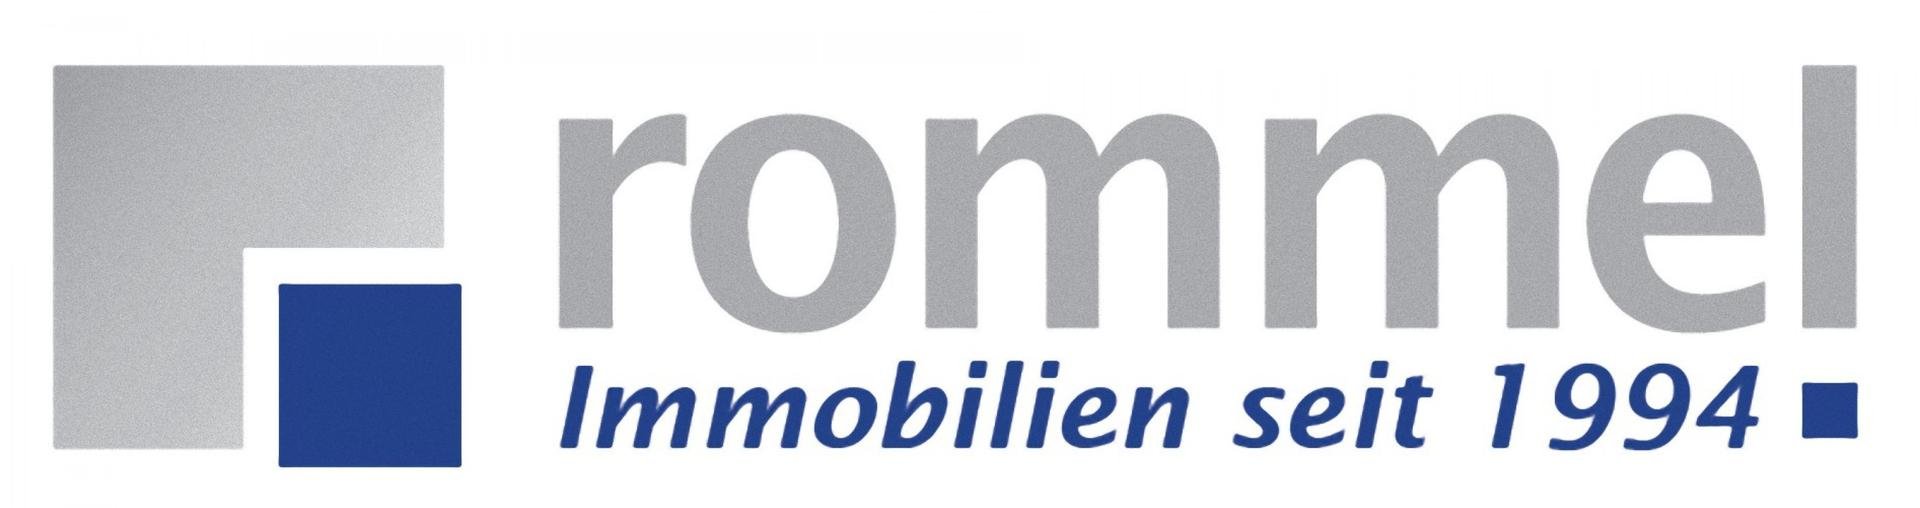 Rommel Immobilien seit 1994 Logo